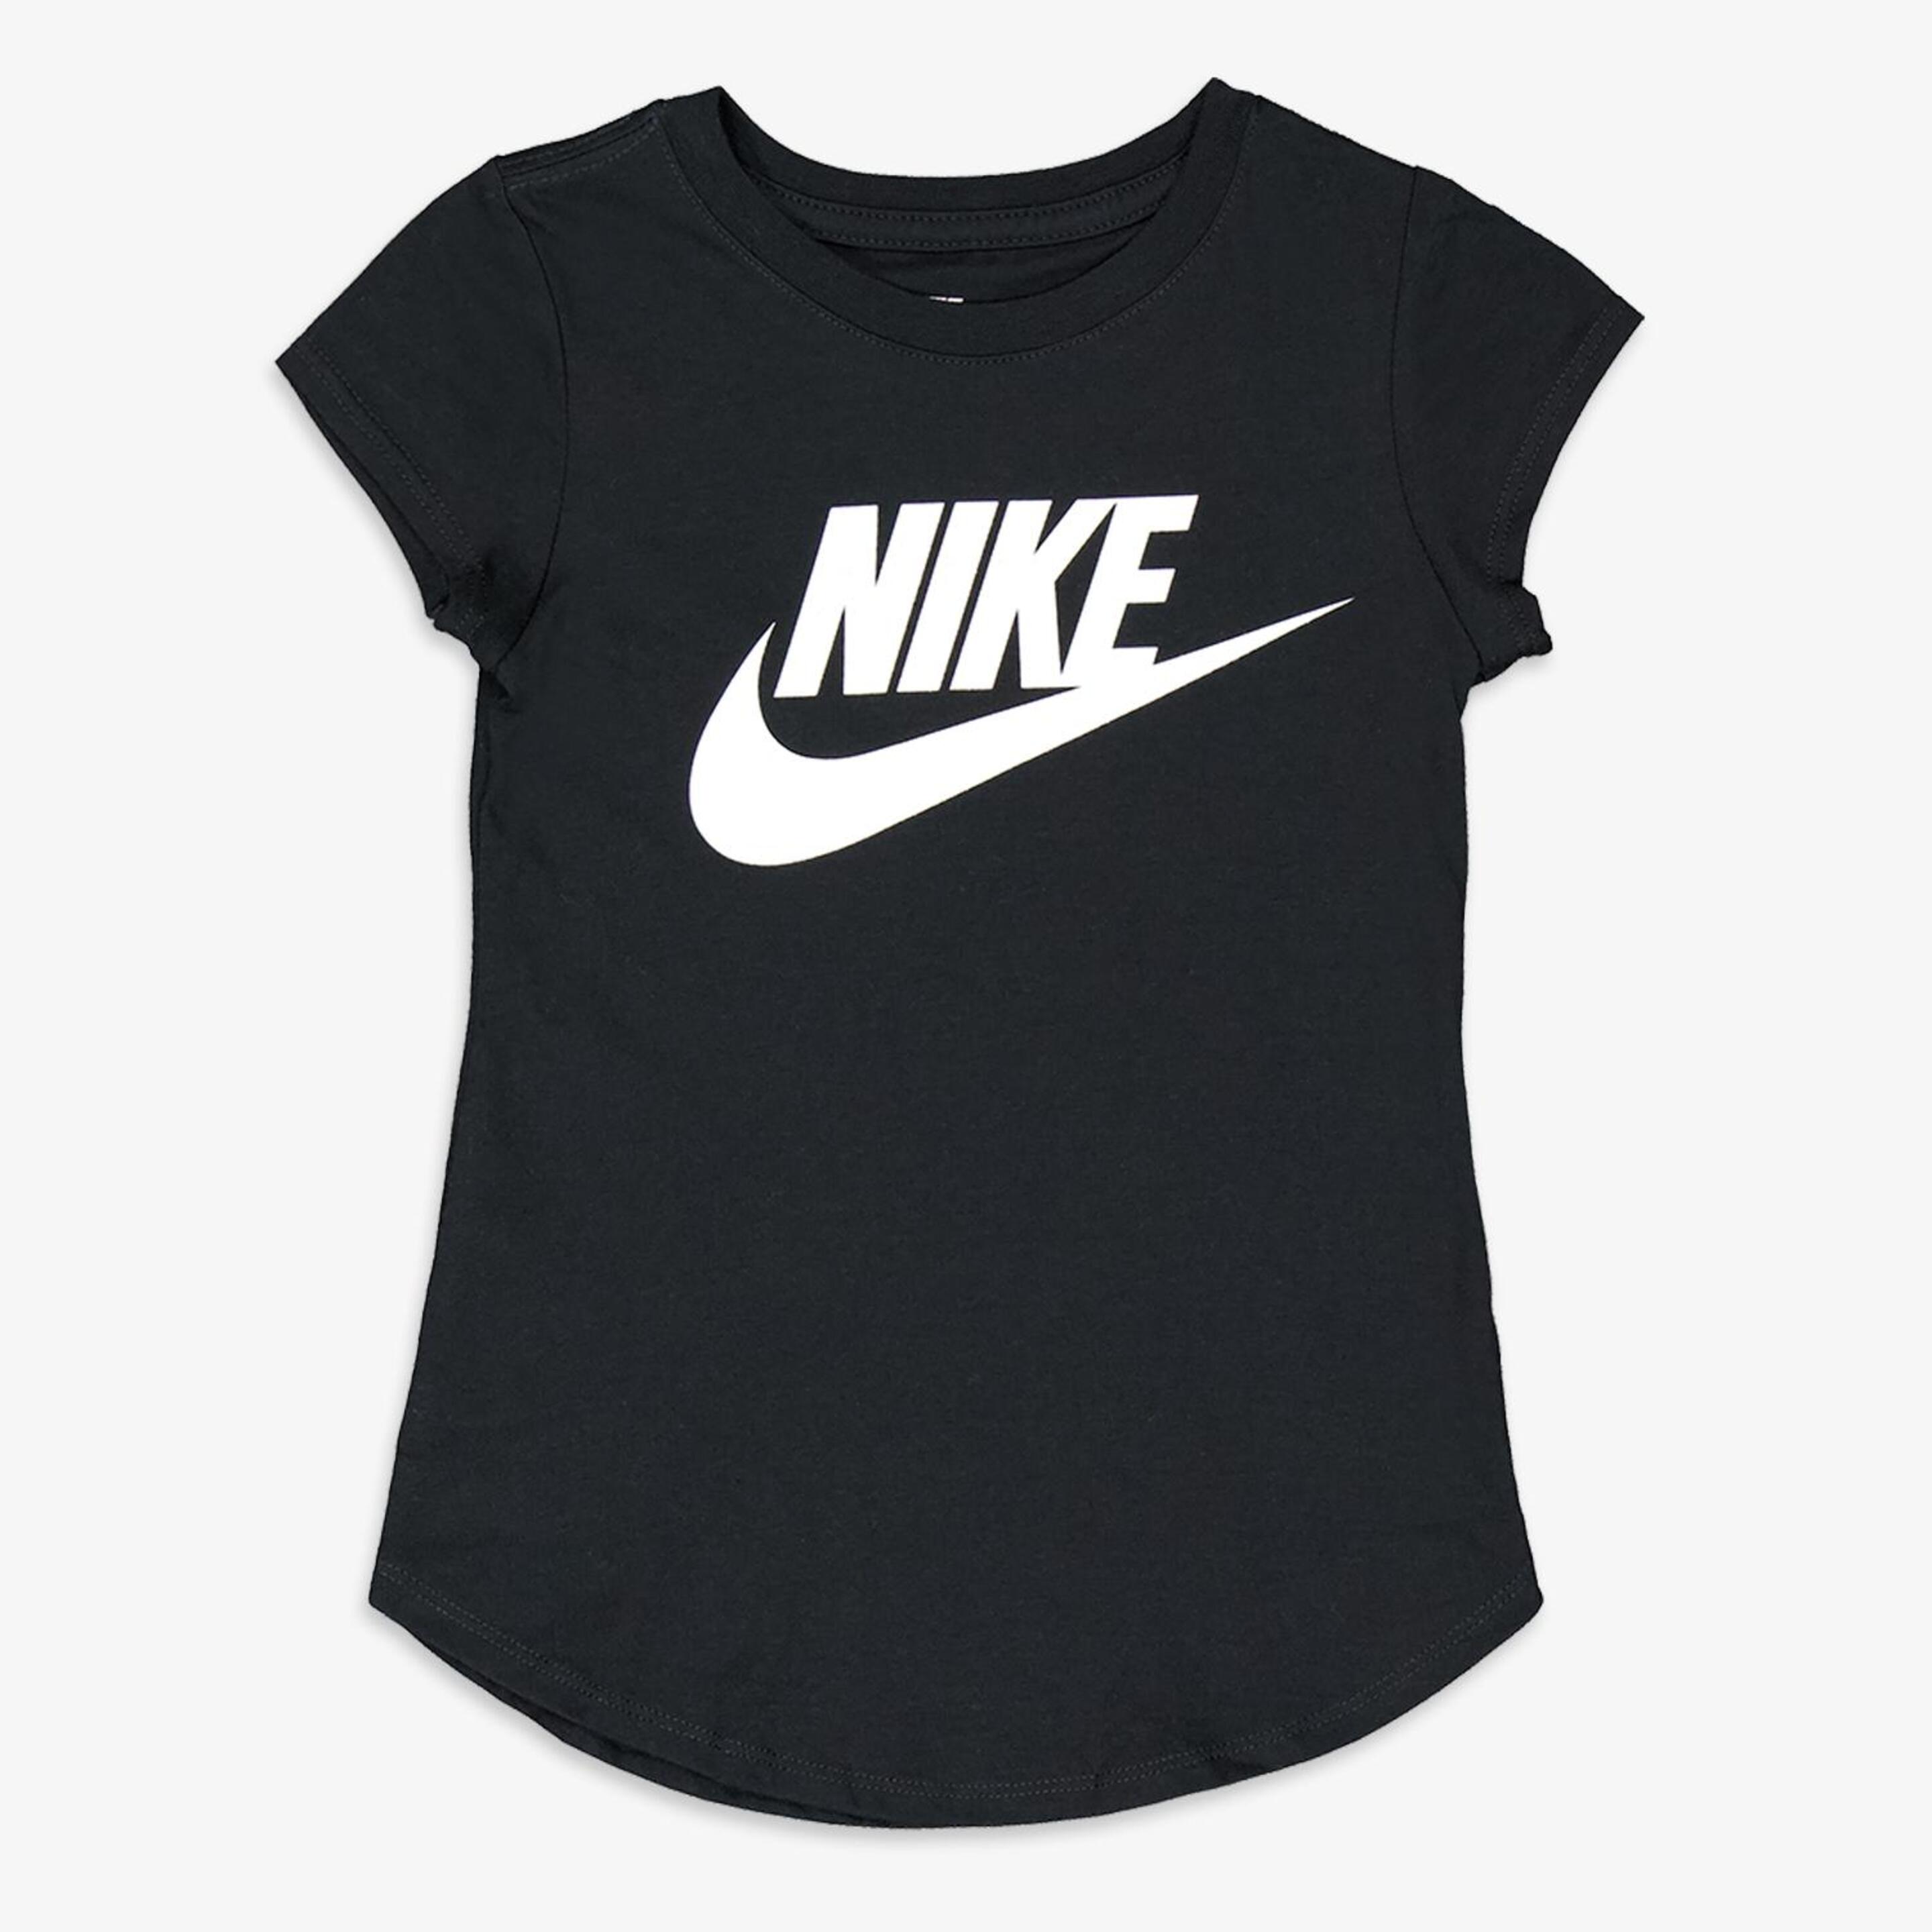 Camiseta Nike - negro - Camiseta Niña